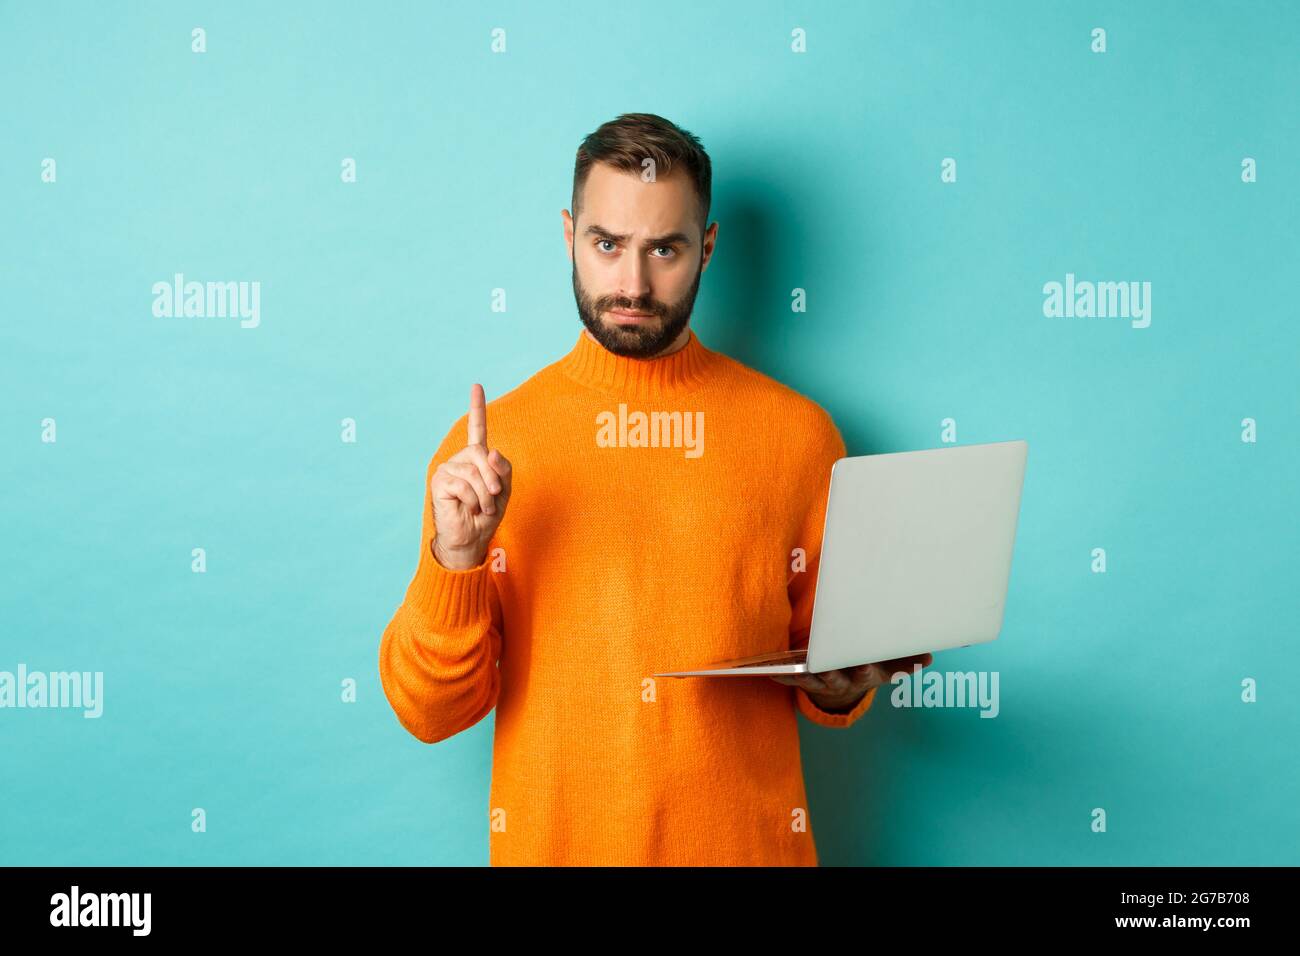 Immagine dell'uomo adulto che insegna online, mostrando il dito mentre si  usa il computer portatile, spiegando le regole, in piedi su sfondo azzurro  Foto stock - Alamy